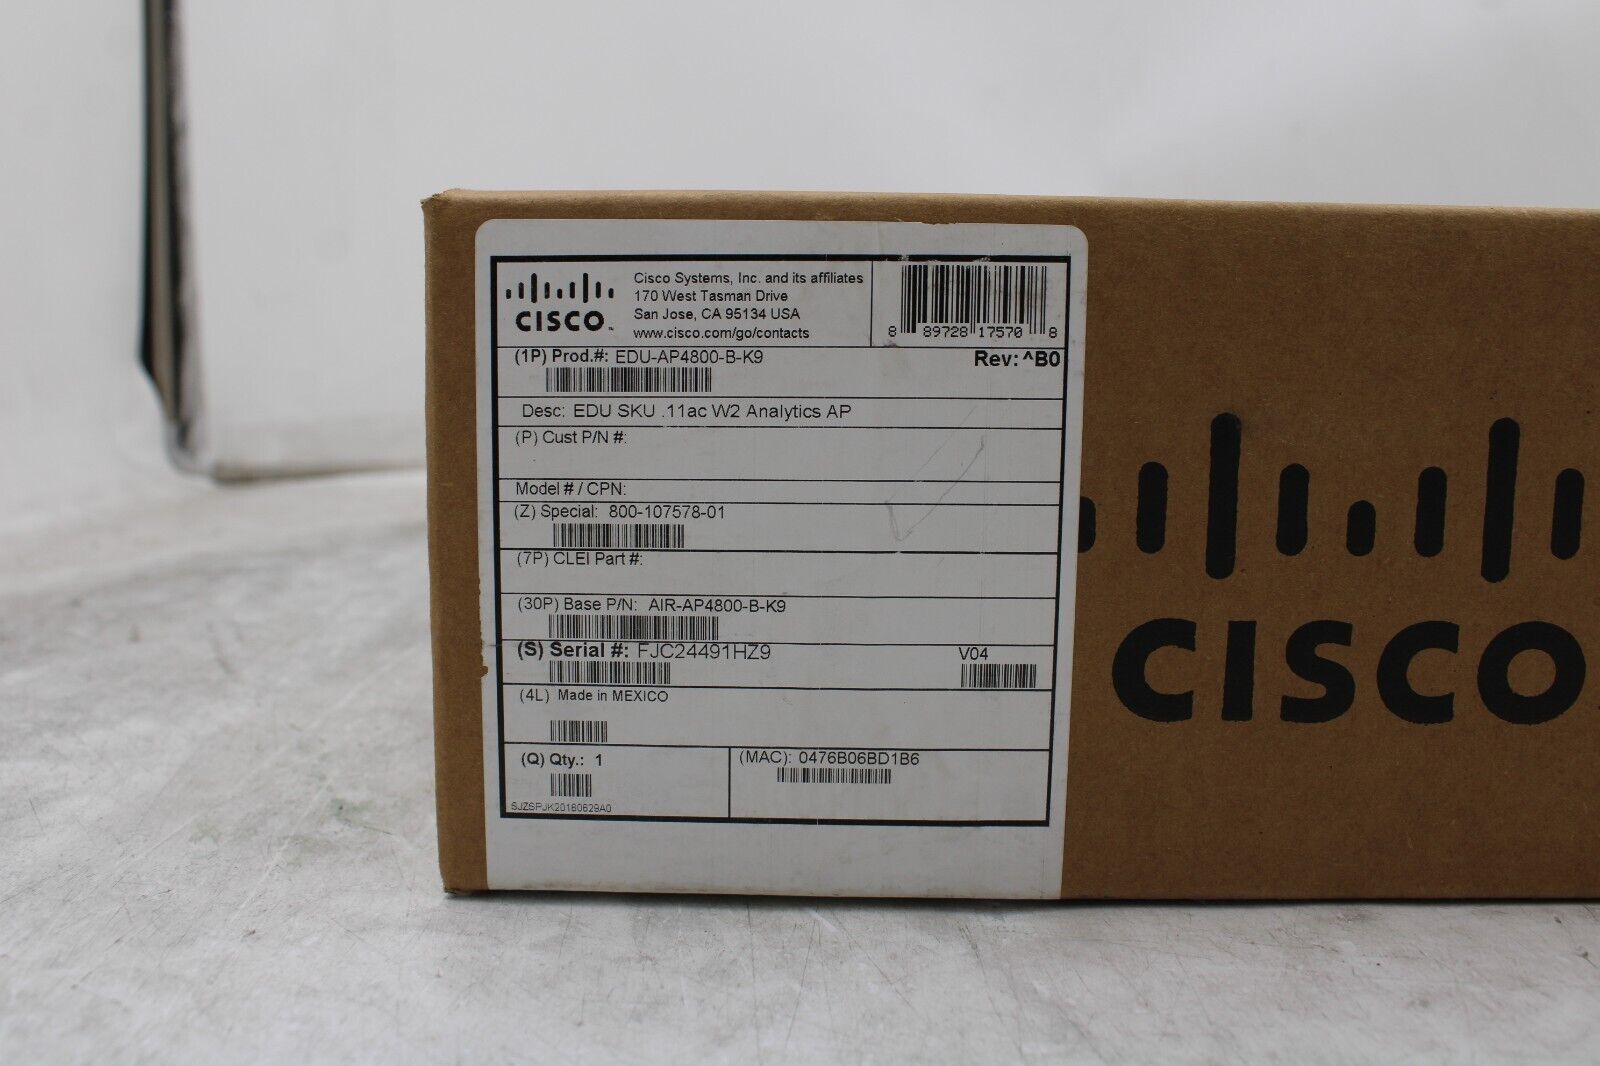 New Cisco Aironet 4800 Series AIR-AP4800-B-K9 802.11ac Wireless Access Point